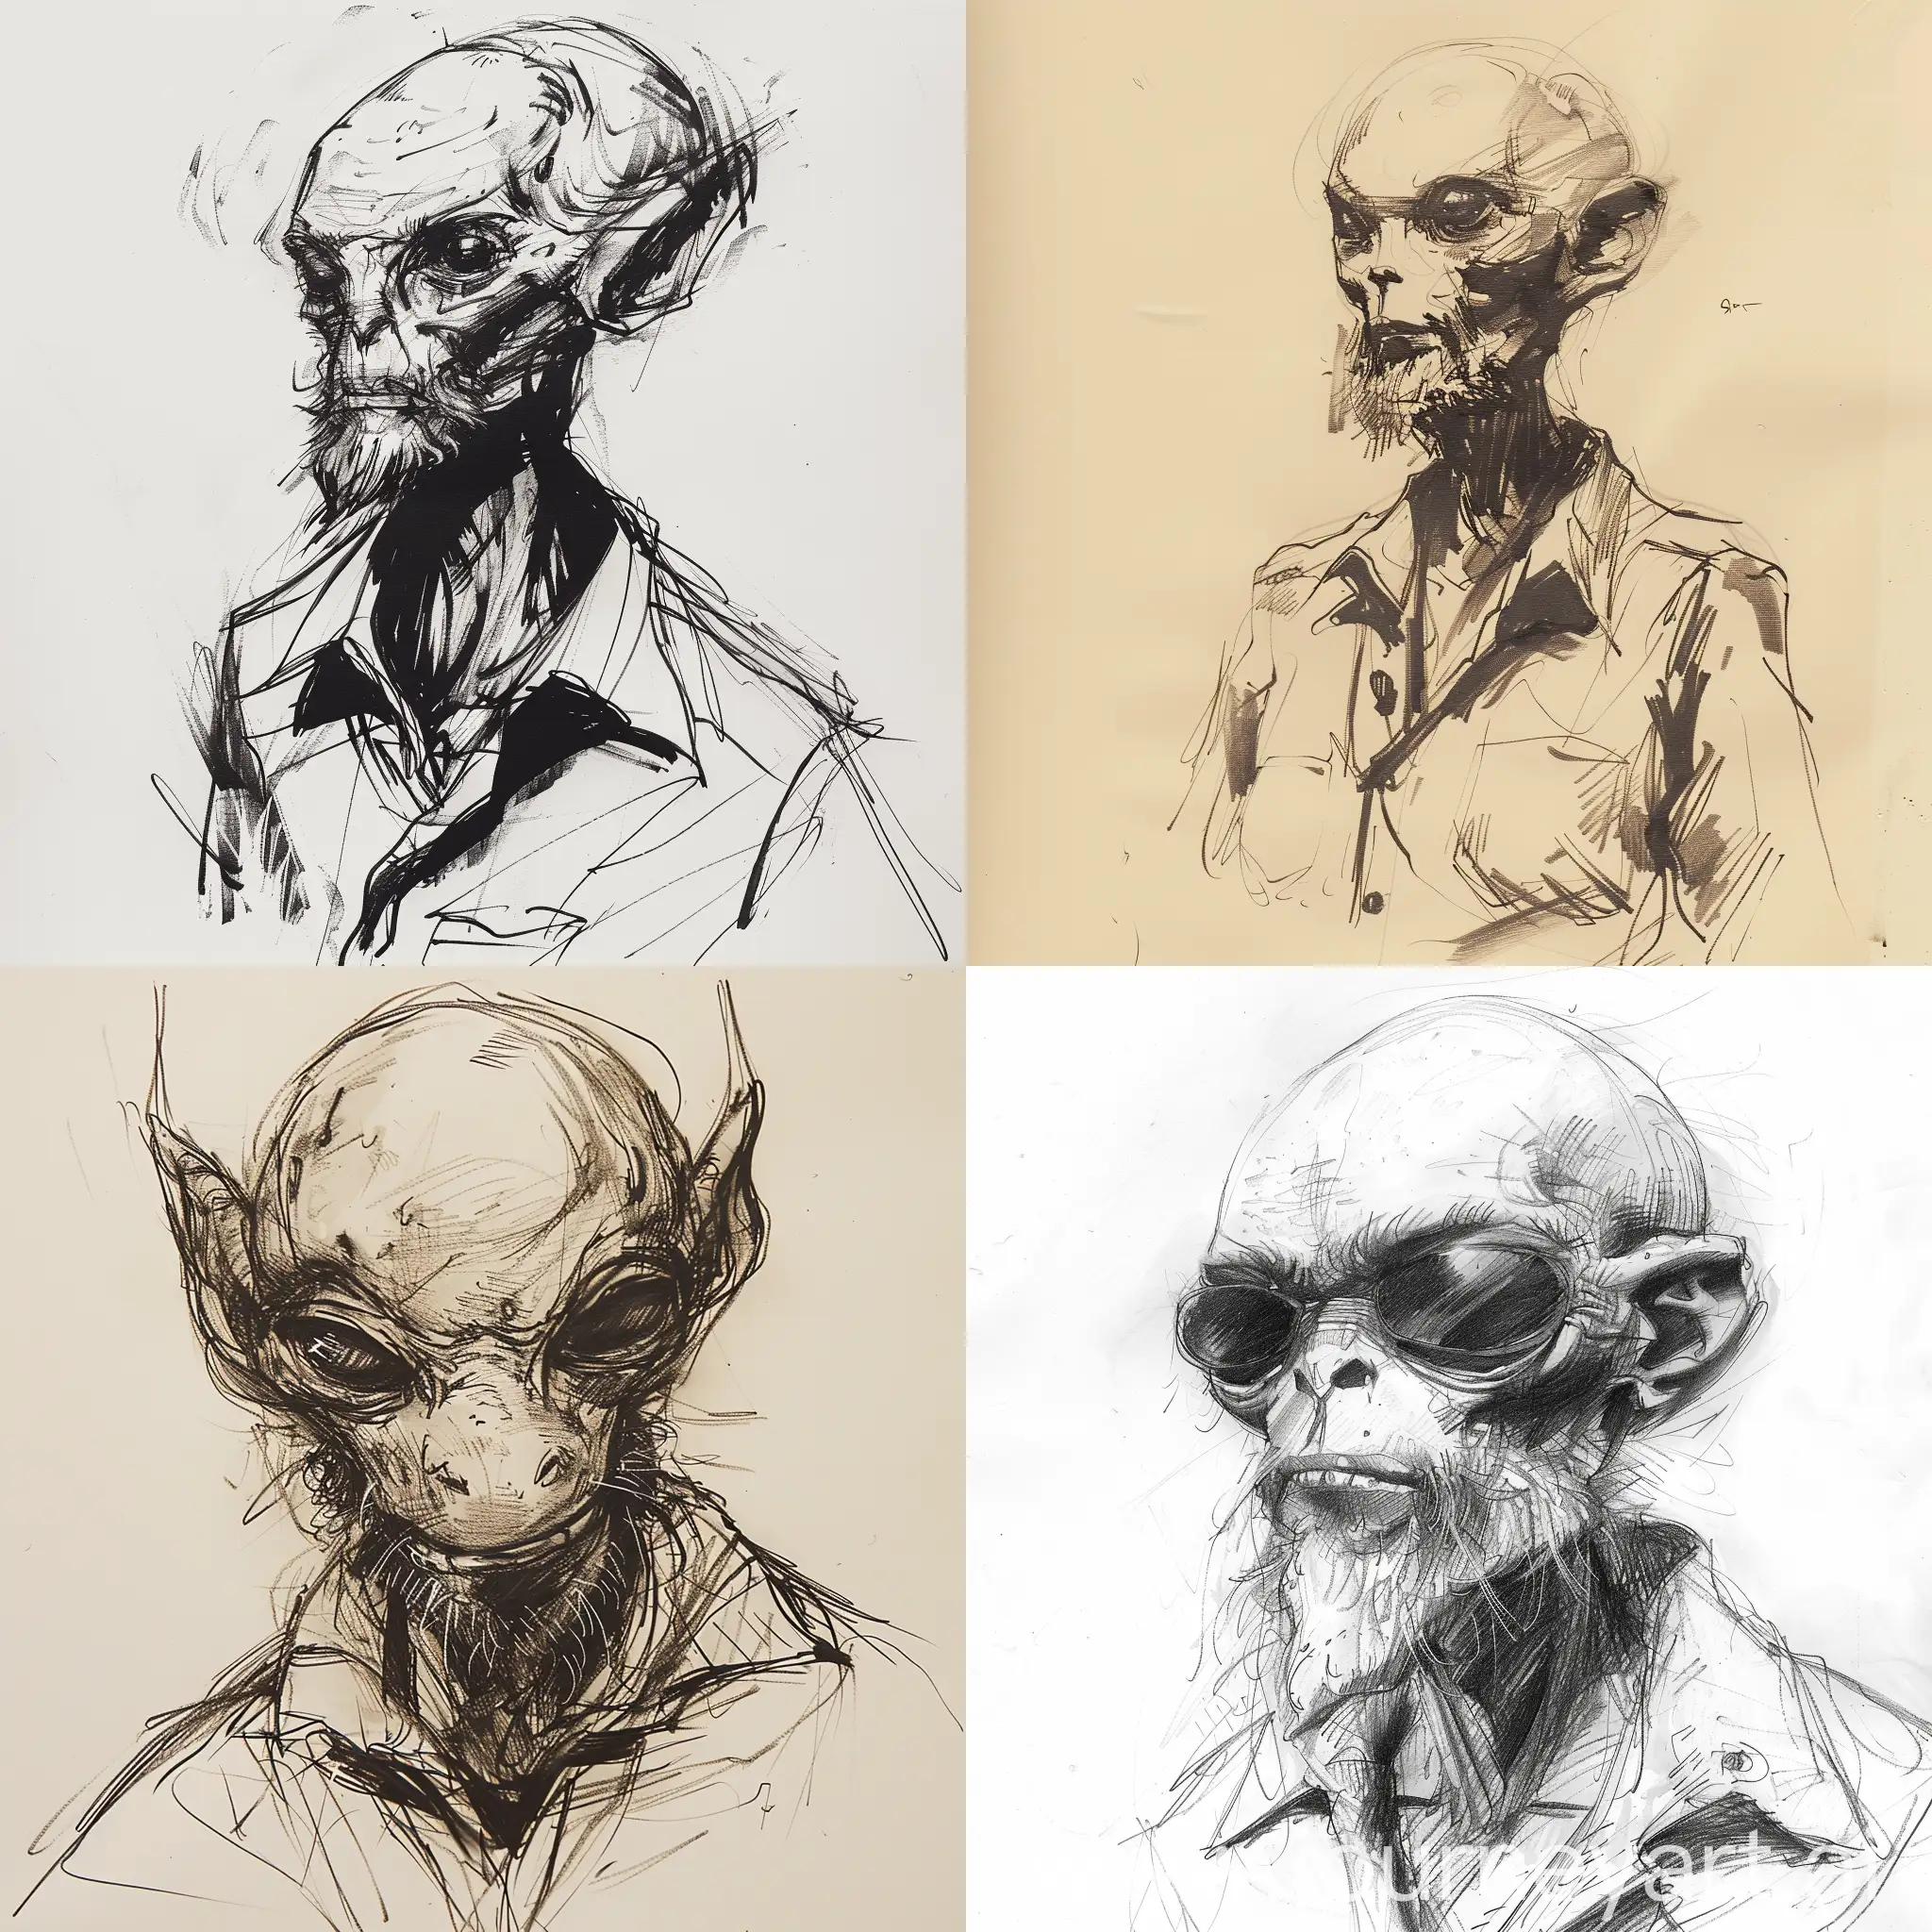 Alien-Portrait-with-Beard-in-Yoji-Shinkawa-Style-Sketch